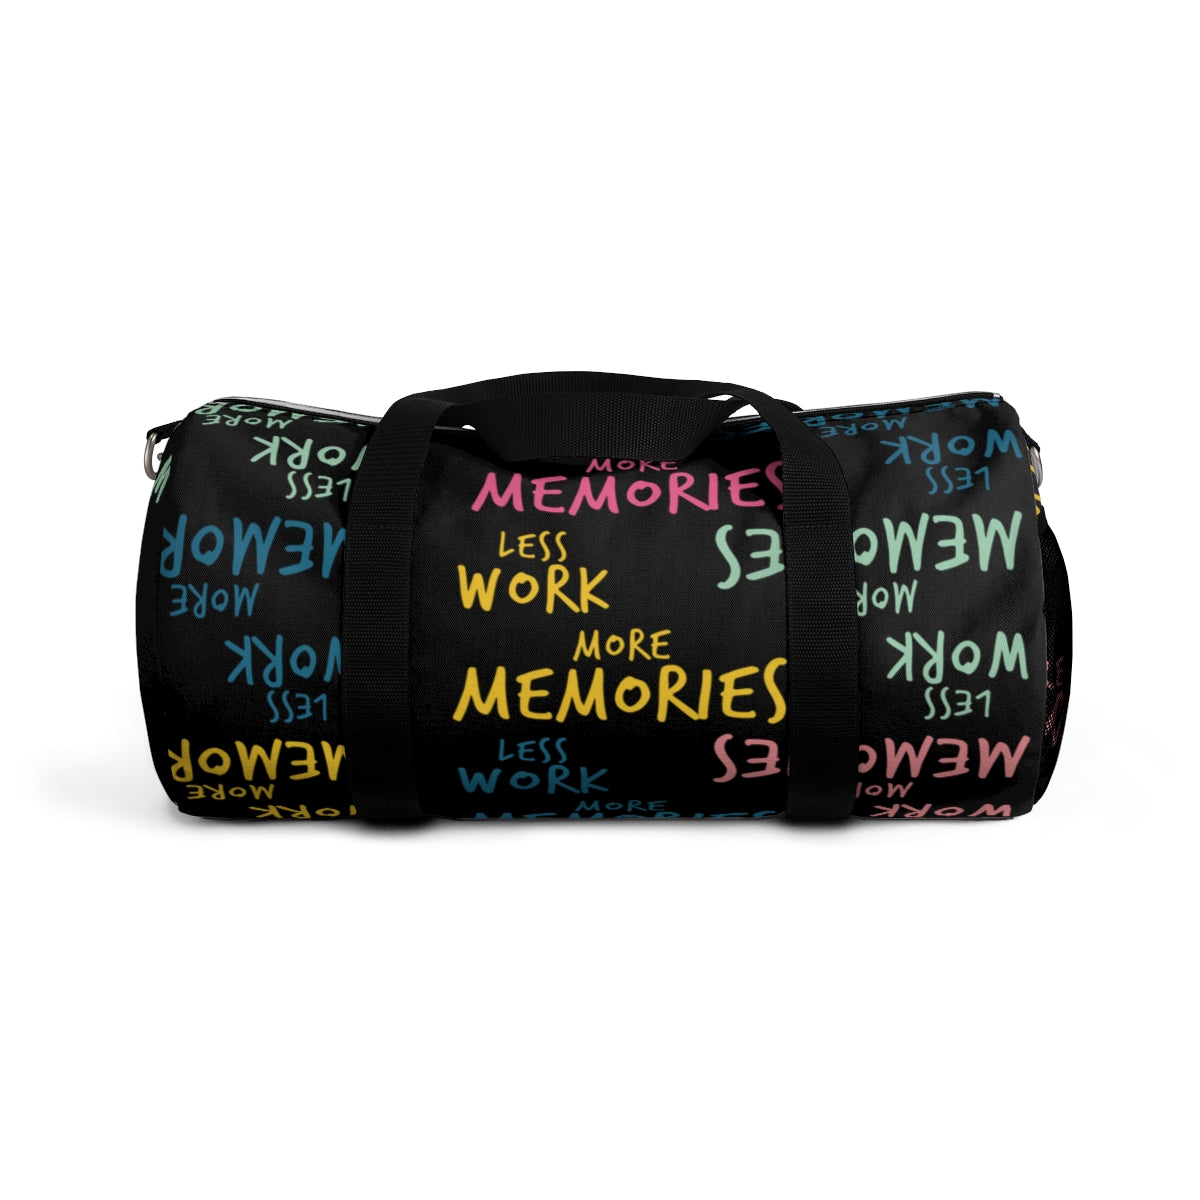 Less Work™ More Memories Duffel Bag